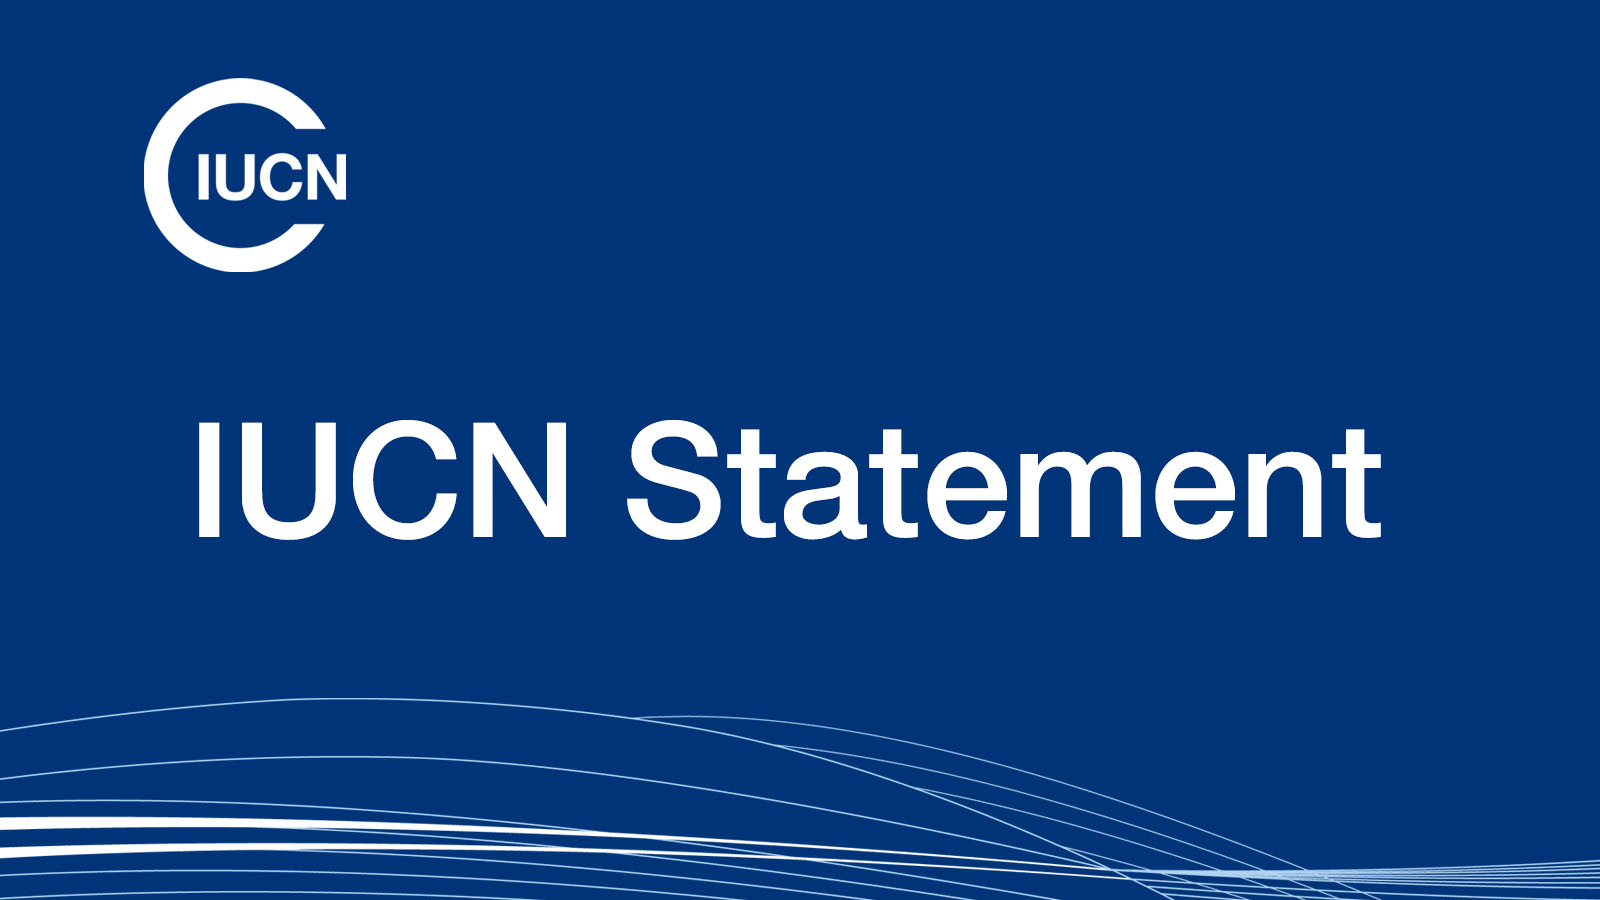 IUCN statement